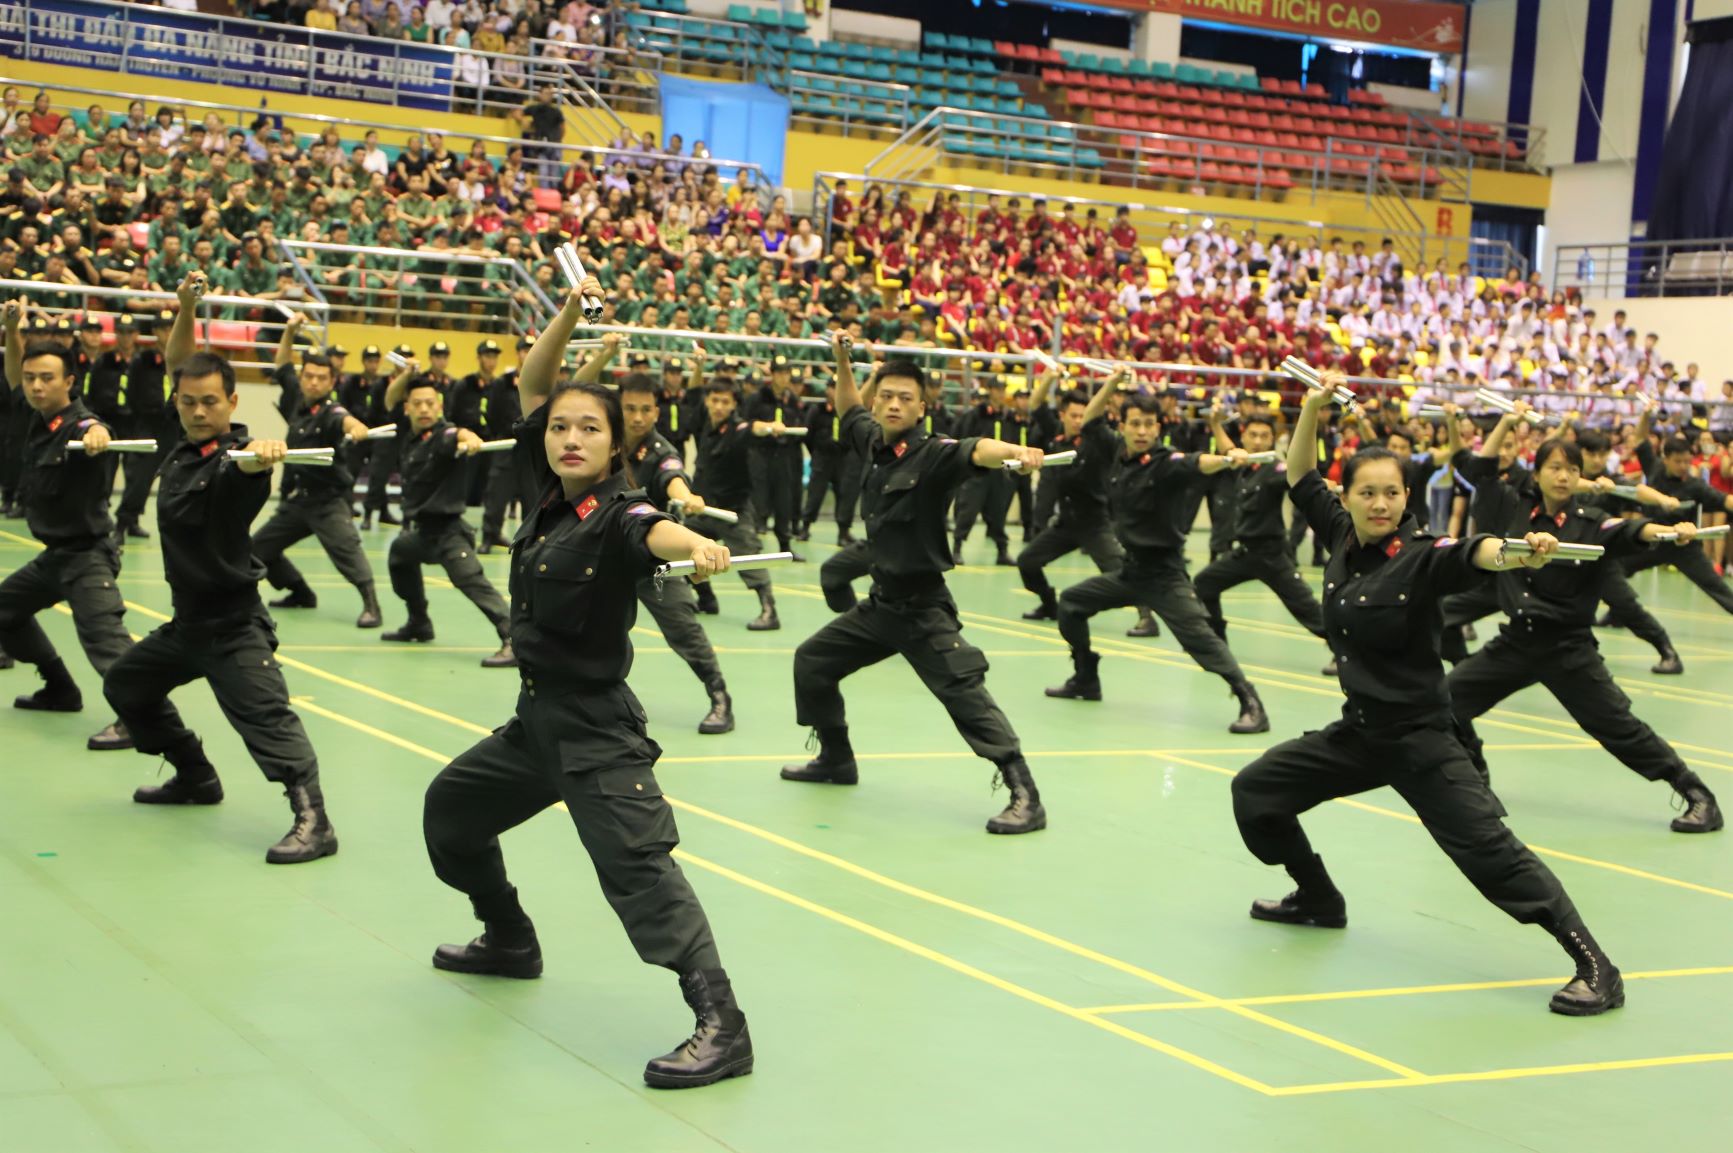 Khai mạc Liên hoan Thể dục thể thao Phụ nữ toàn quốc năm 2019 là màn trình diễn đầy ấn tượng của lực lượng công an tỉnh Bắc Ninh. Thấp thoáng trong màn biểu diễn võ thuật là các bóng hồng vừa khỏe khoắn tinh nhanh vừa rạng rỡ đầy nữ tính, để lại ấn tượng đẹp với khán giả